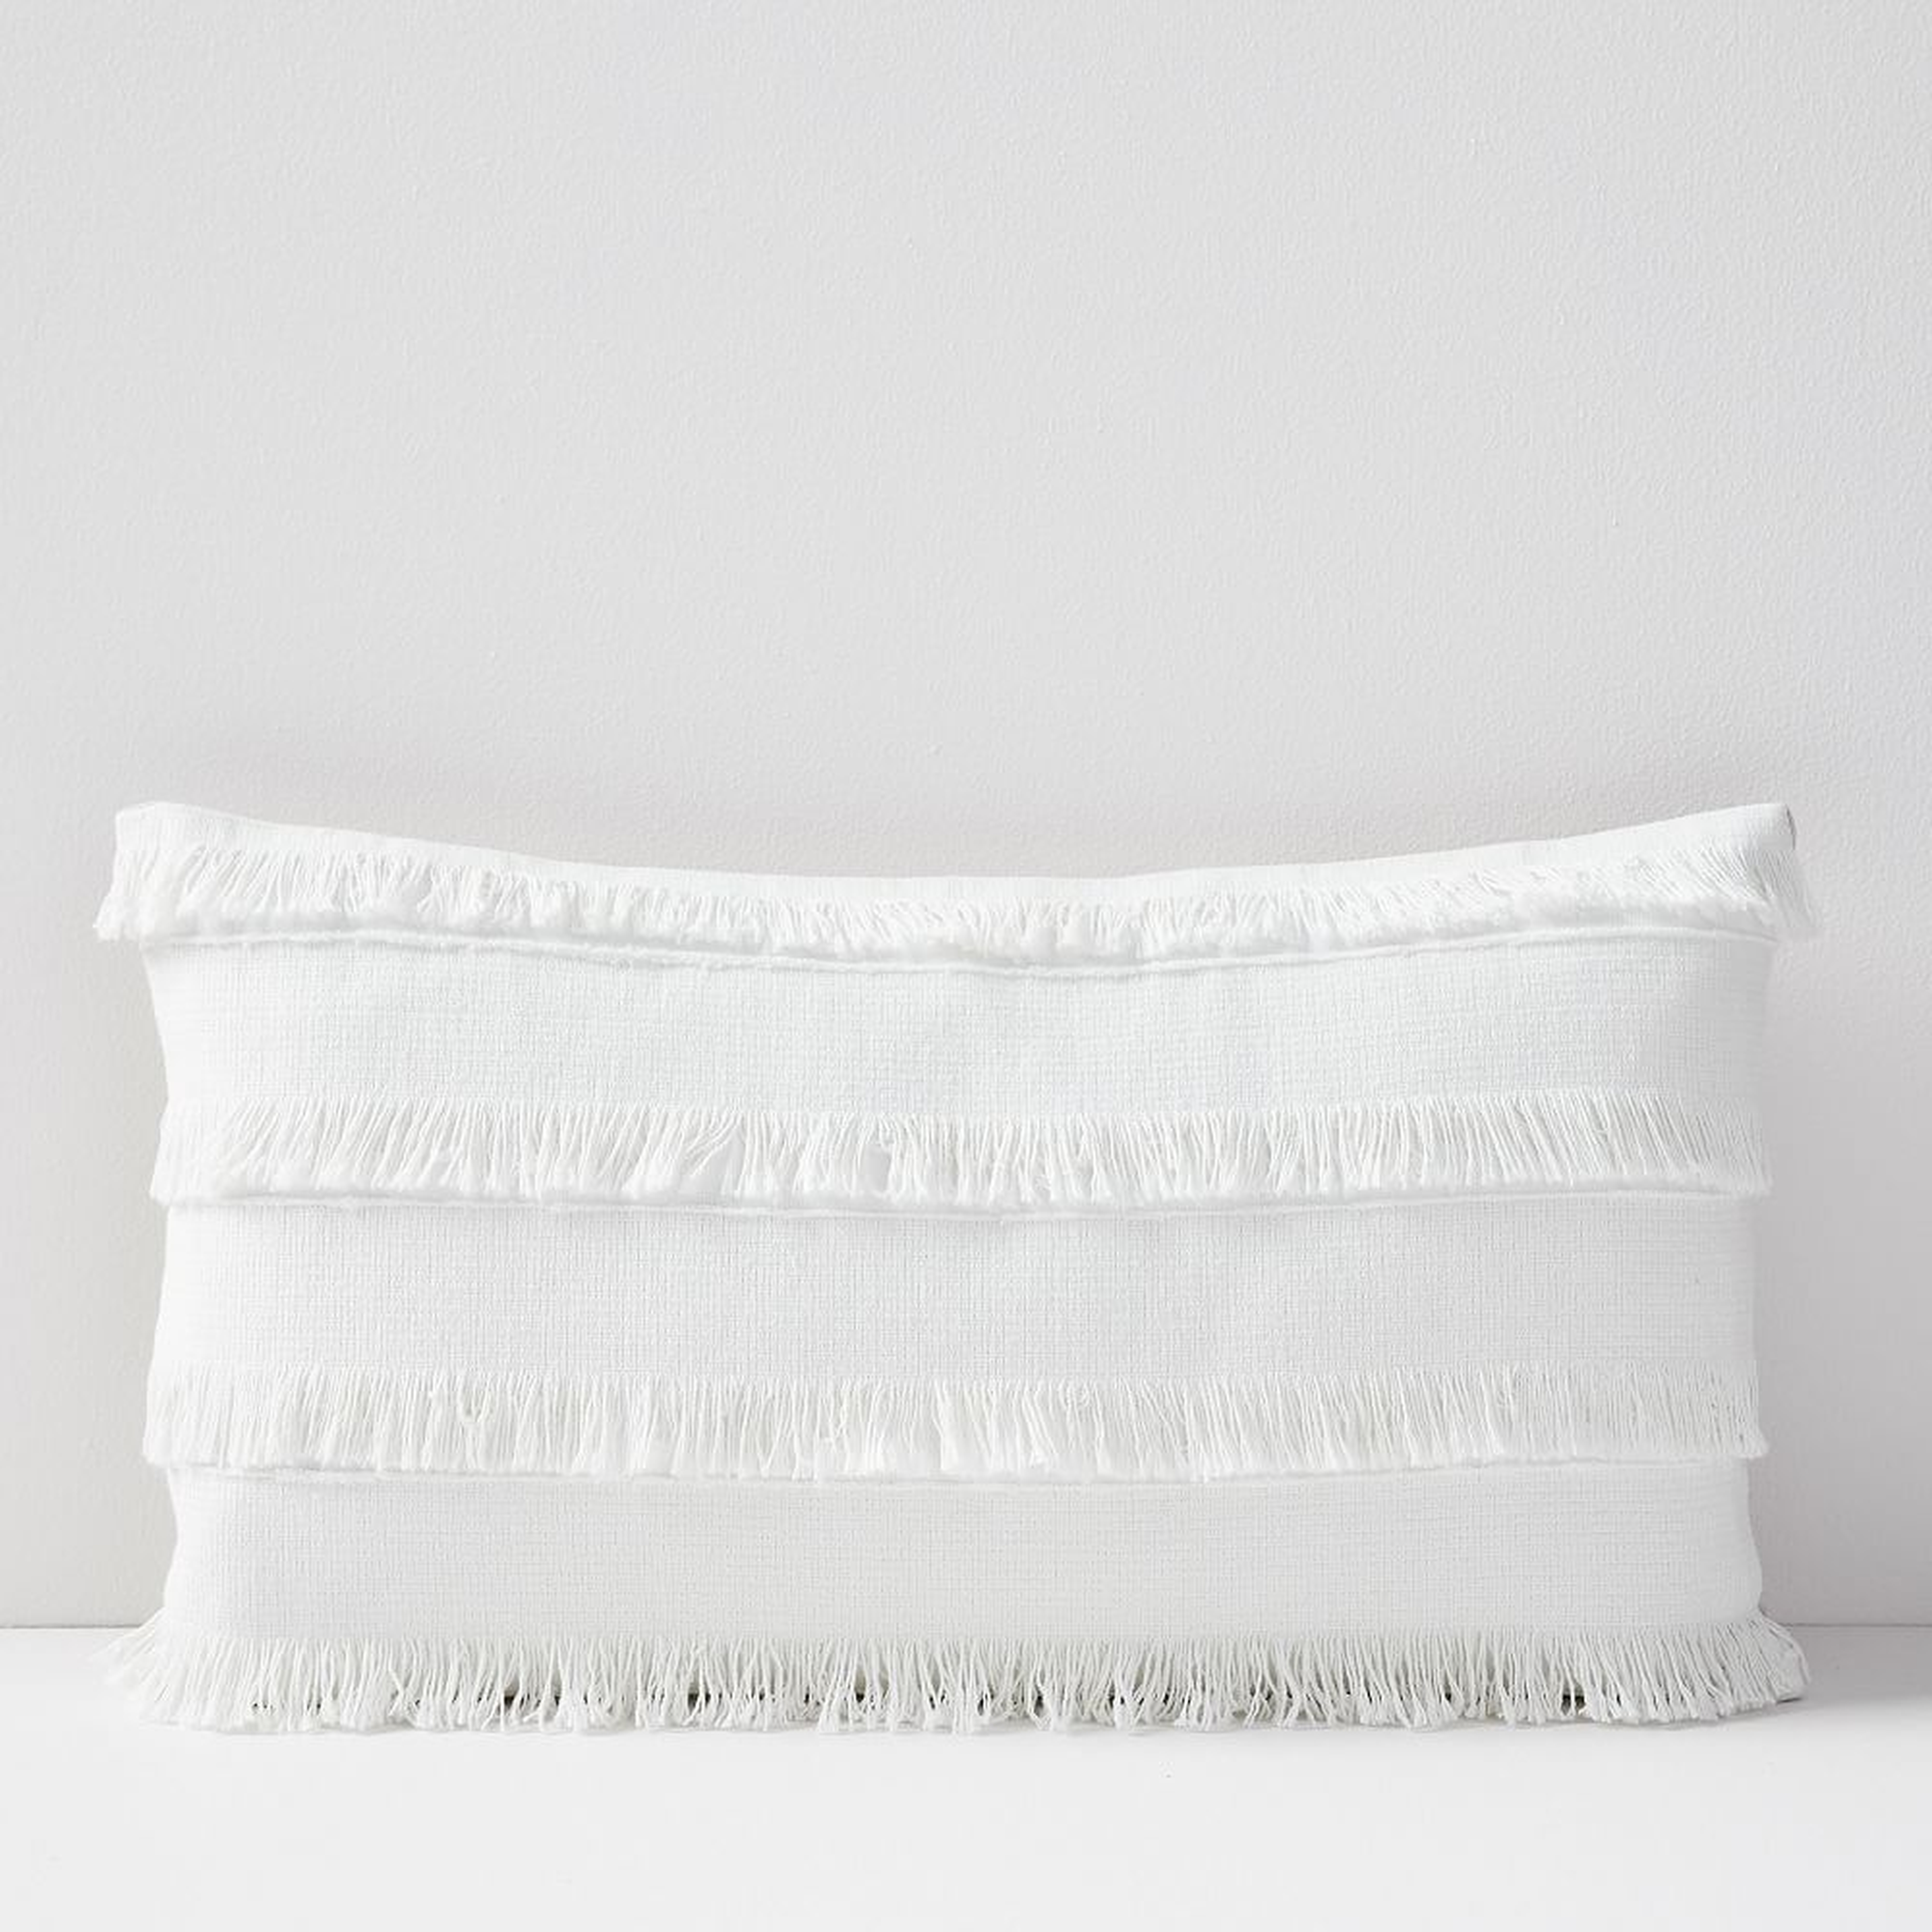 Fringe Pillow Cover, 12"x21", White - West Elm